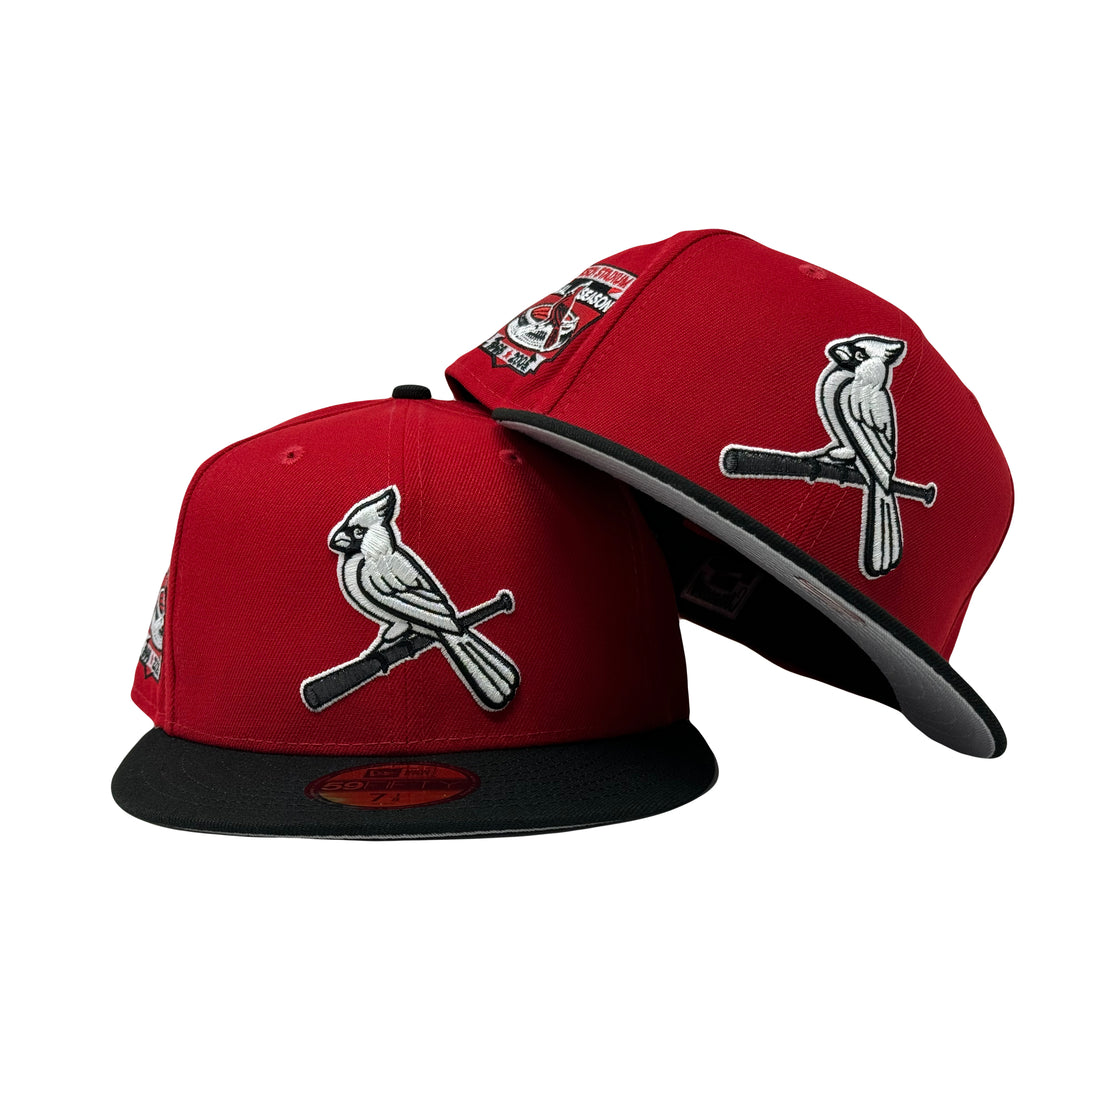 St. Louis Cardinals Busch Stadium 5950 Red Black New Era Fitted Hat